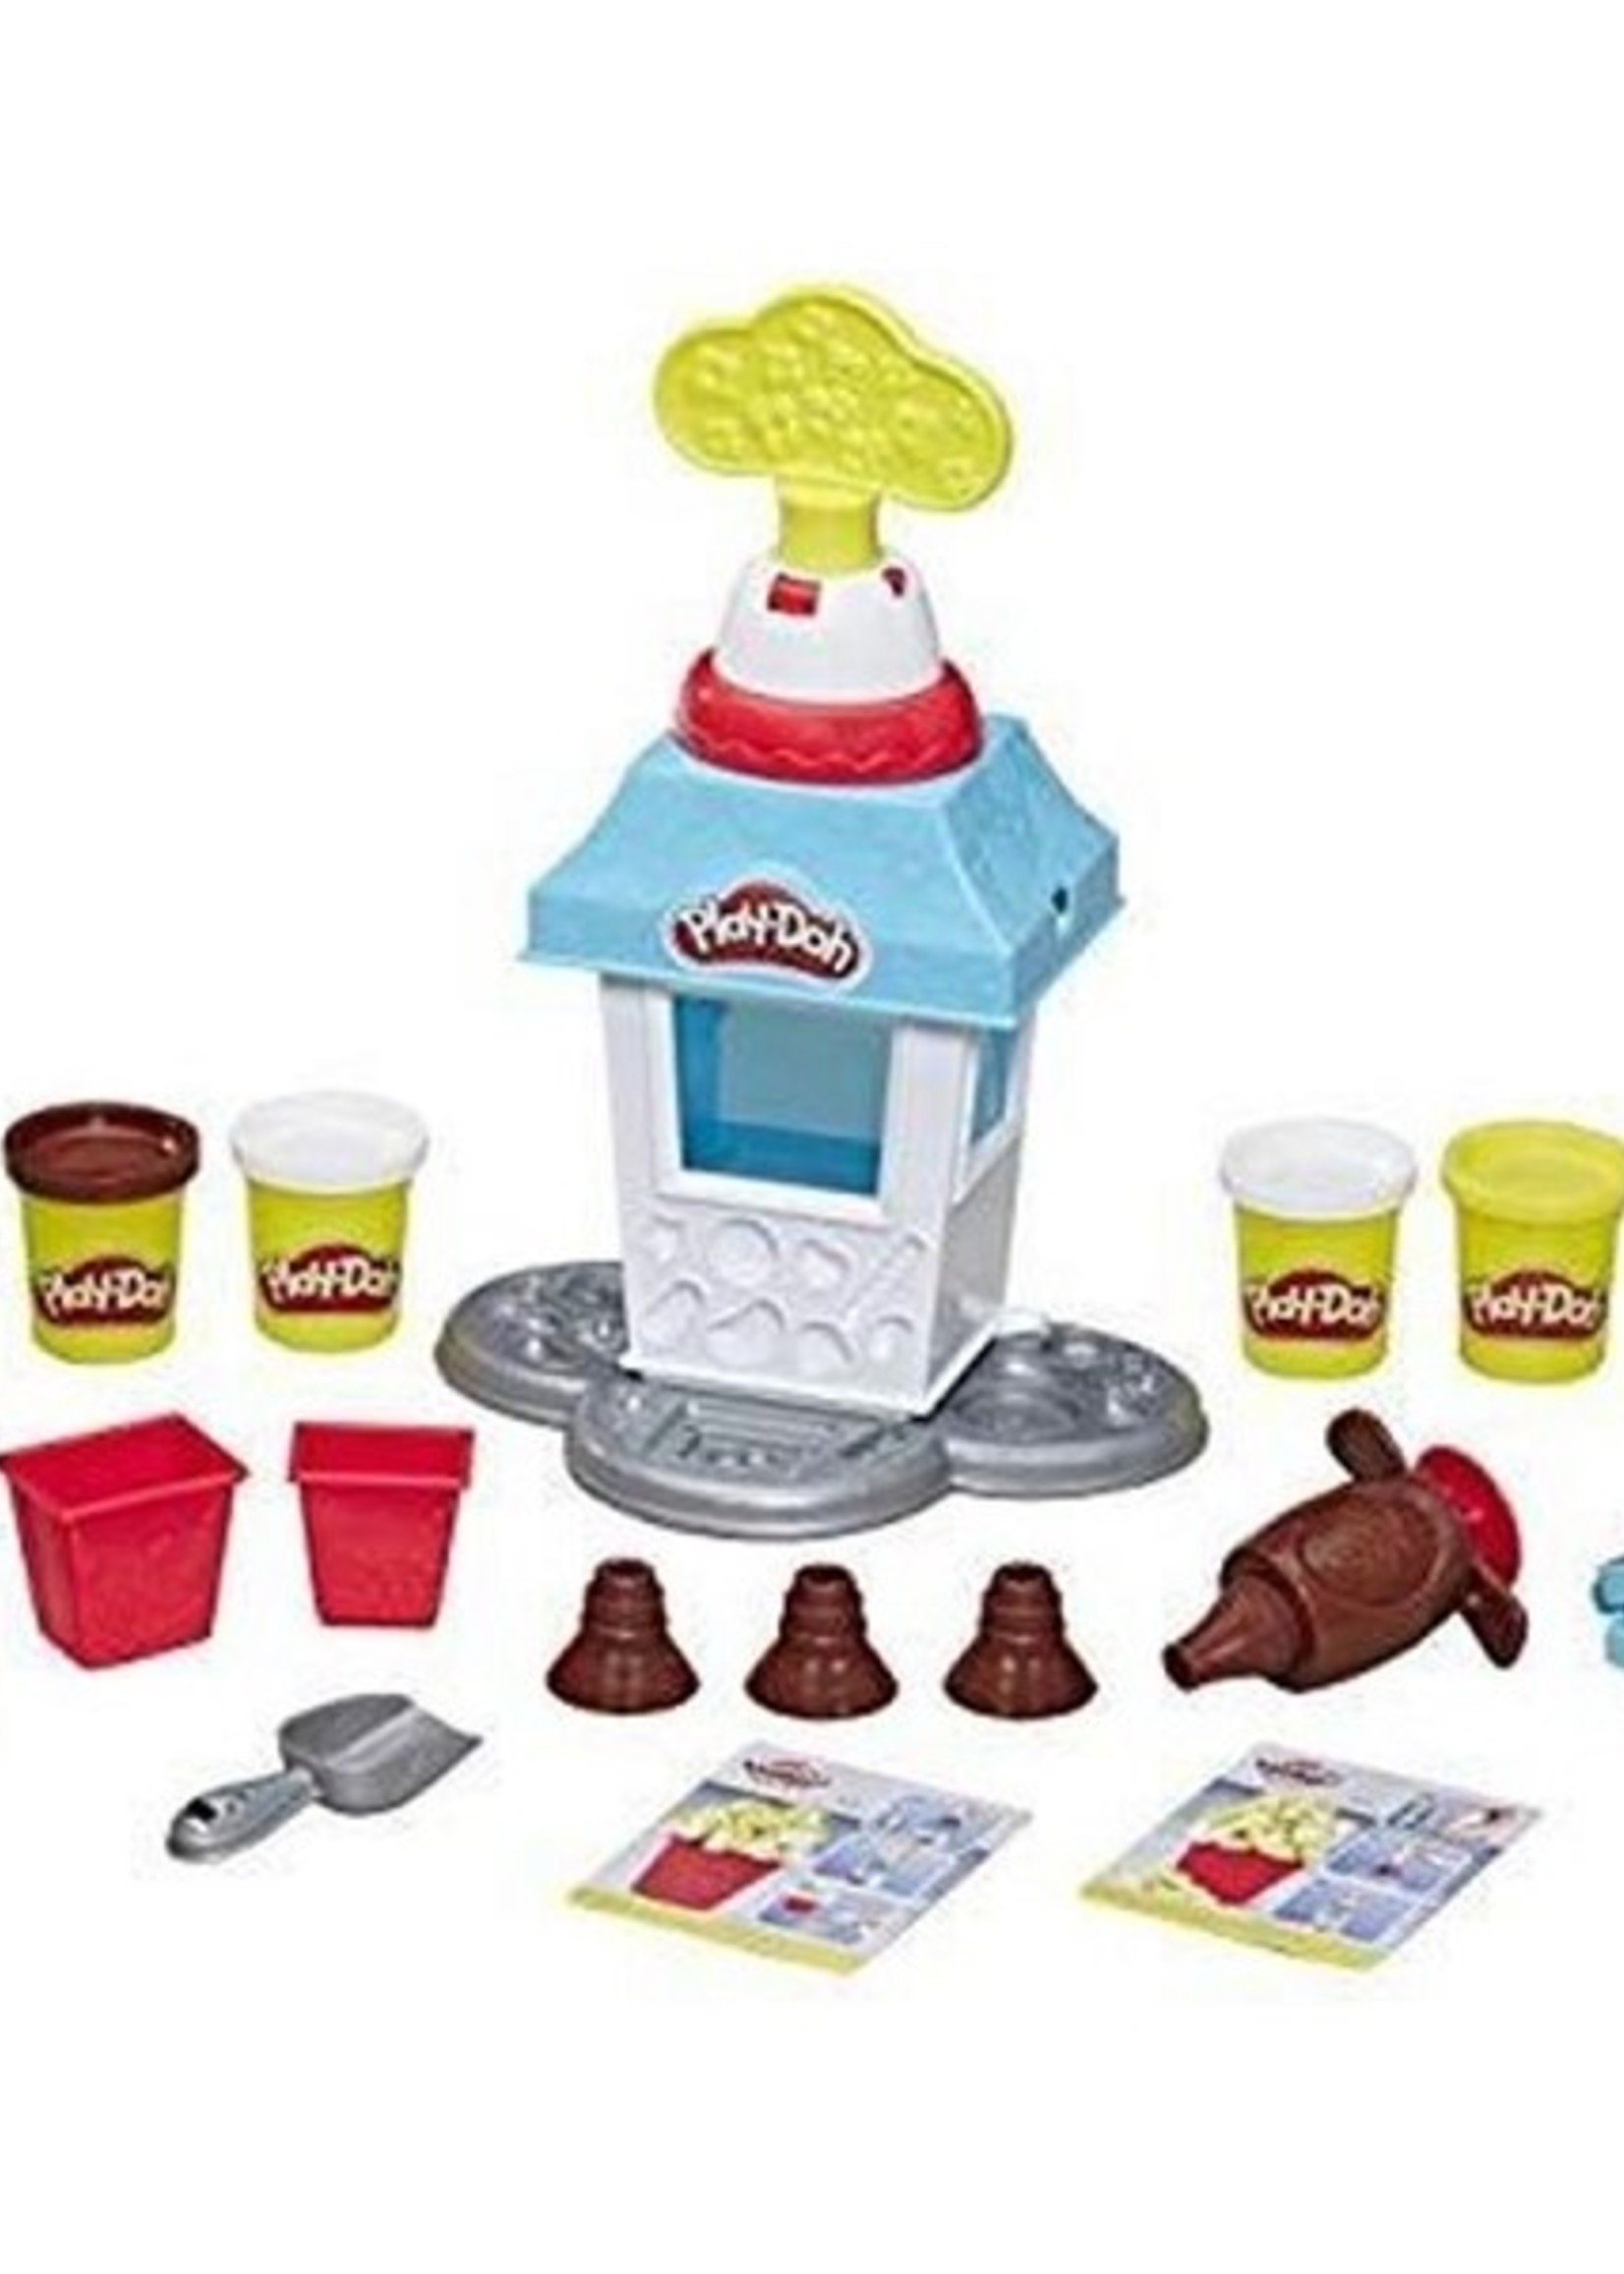 Hasbro Play-Doh Popcorn Party